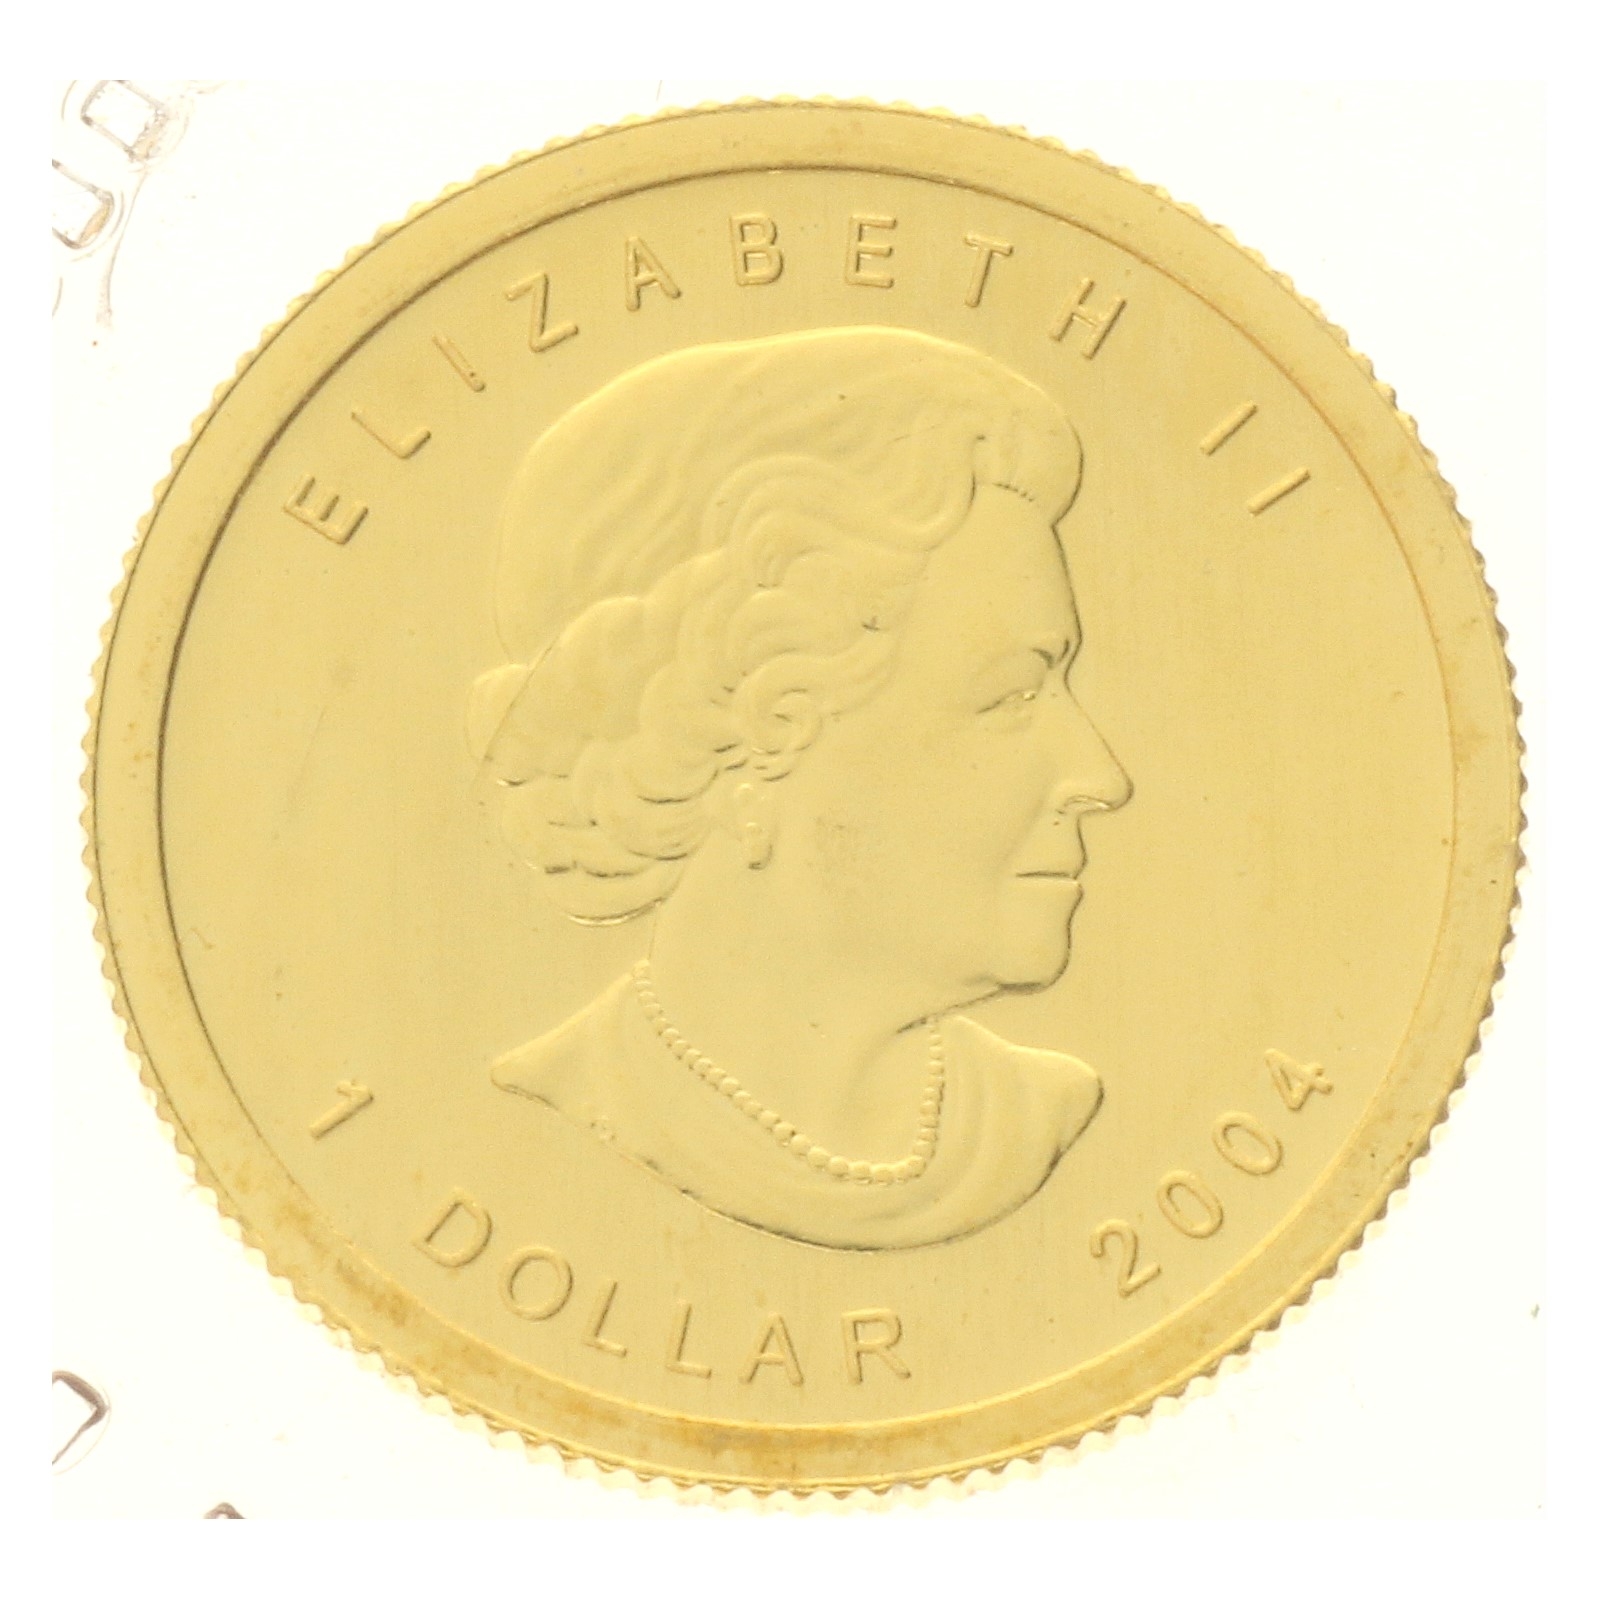 Canada - 1 dollar - 2004 - 1/20 oz